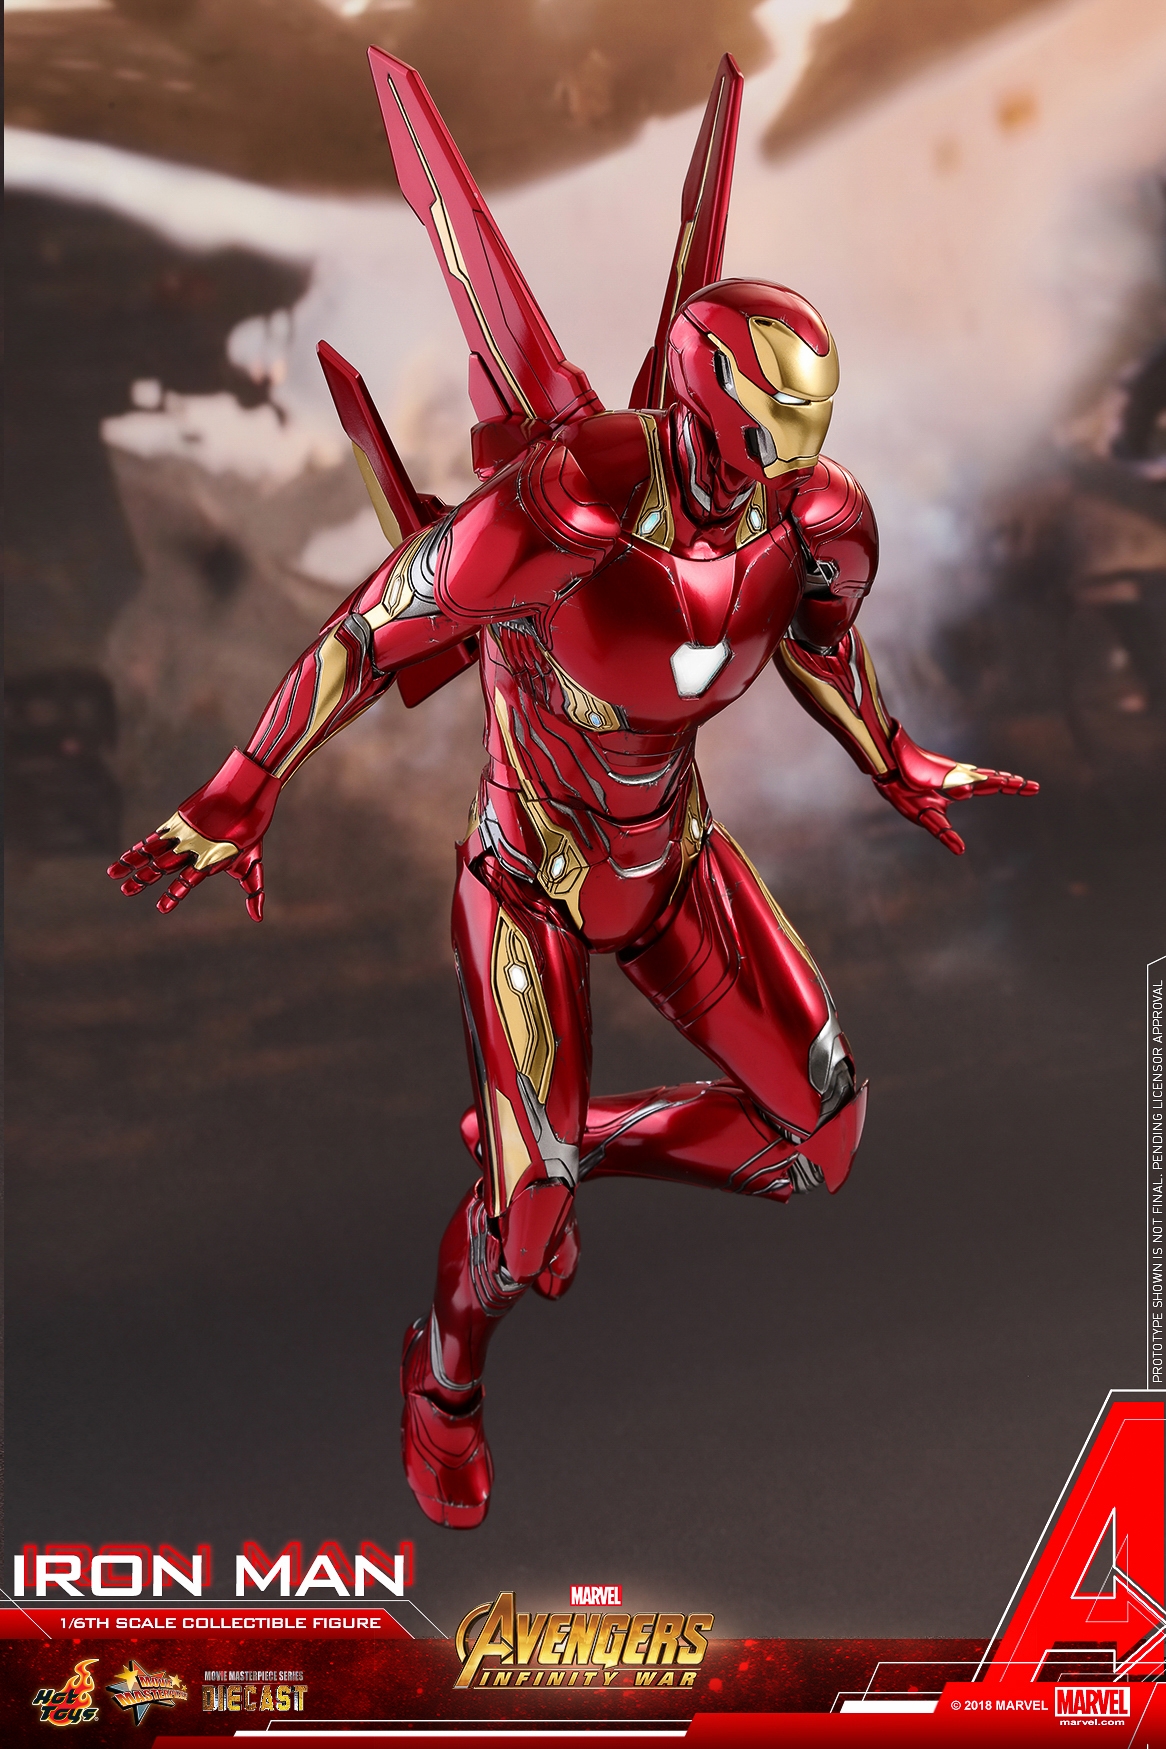 Hot-Toys-MMS473D23-Avengers-Infinity-War-Iron-Man-Collectible-Figure-008.jpg